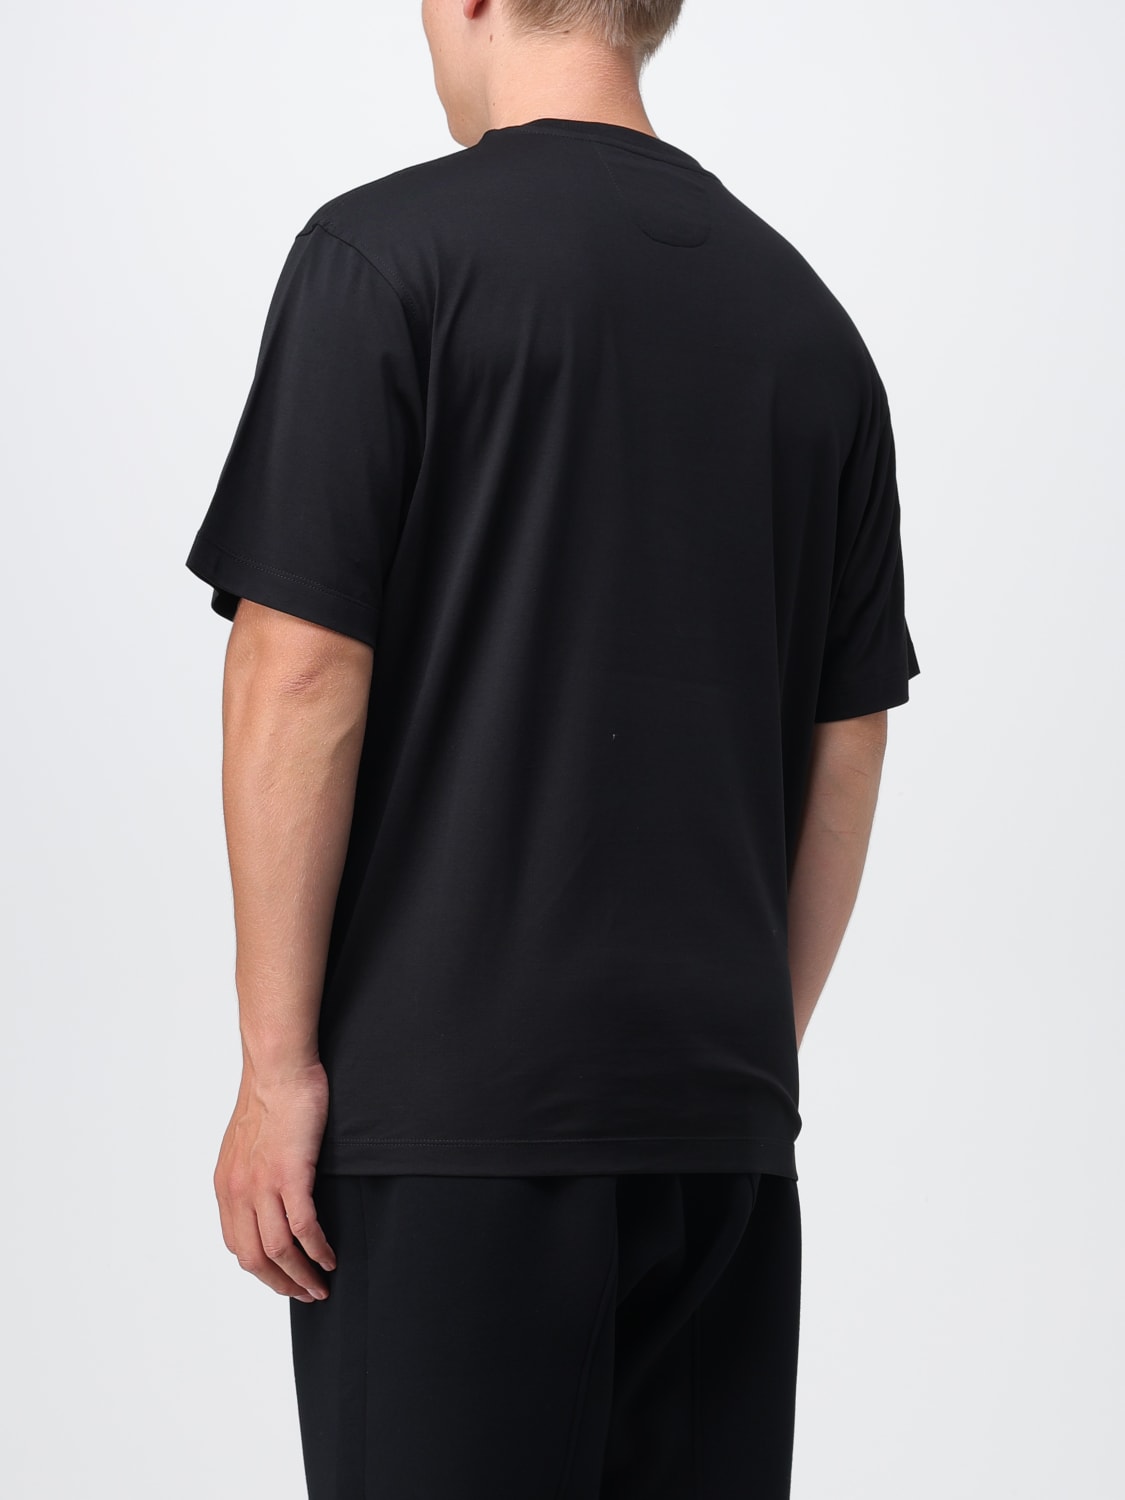 FERRARI: Camiseta para hombre, Negro  Camiseta Ferrari 47824 en línea en